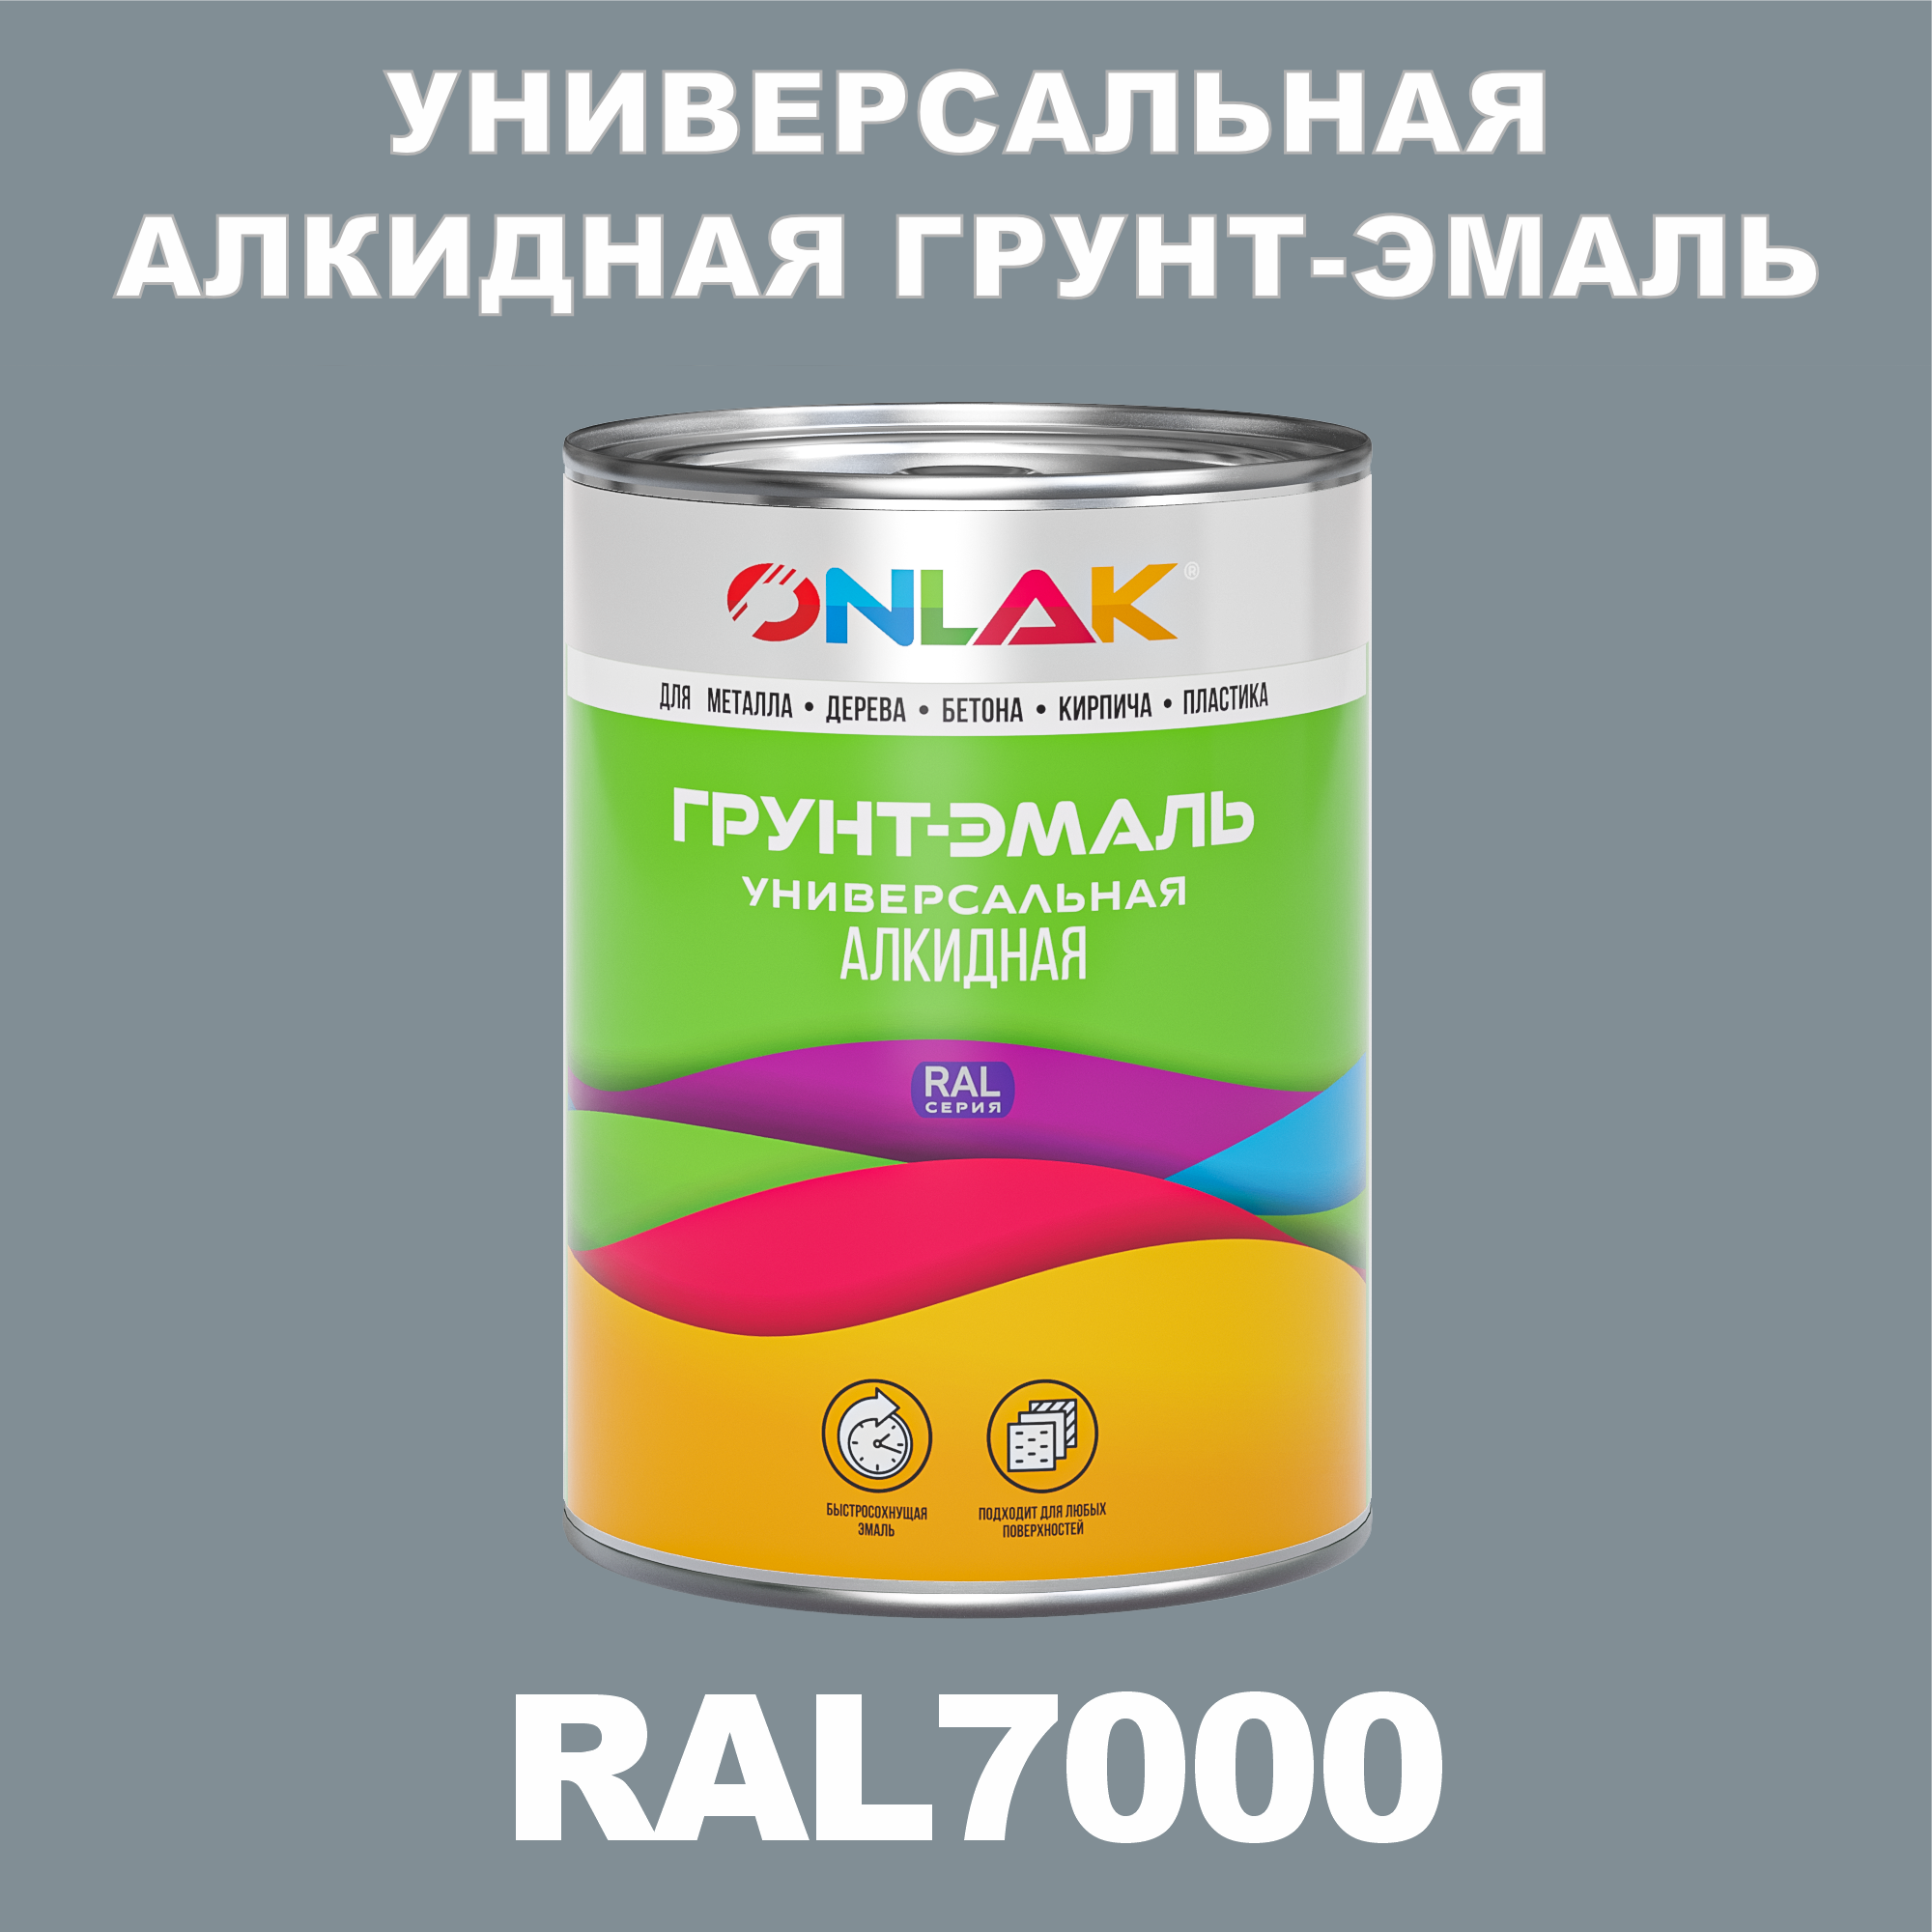 Грунт-эмаль ONLAK 1К RAL7000 антикоррозионная алкидная по металлу по ржавчине 1 кг грунт эмаль skladno по ржавчине алкидная желтая 1 8 кг